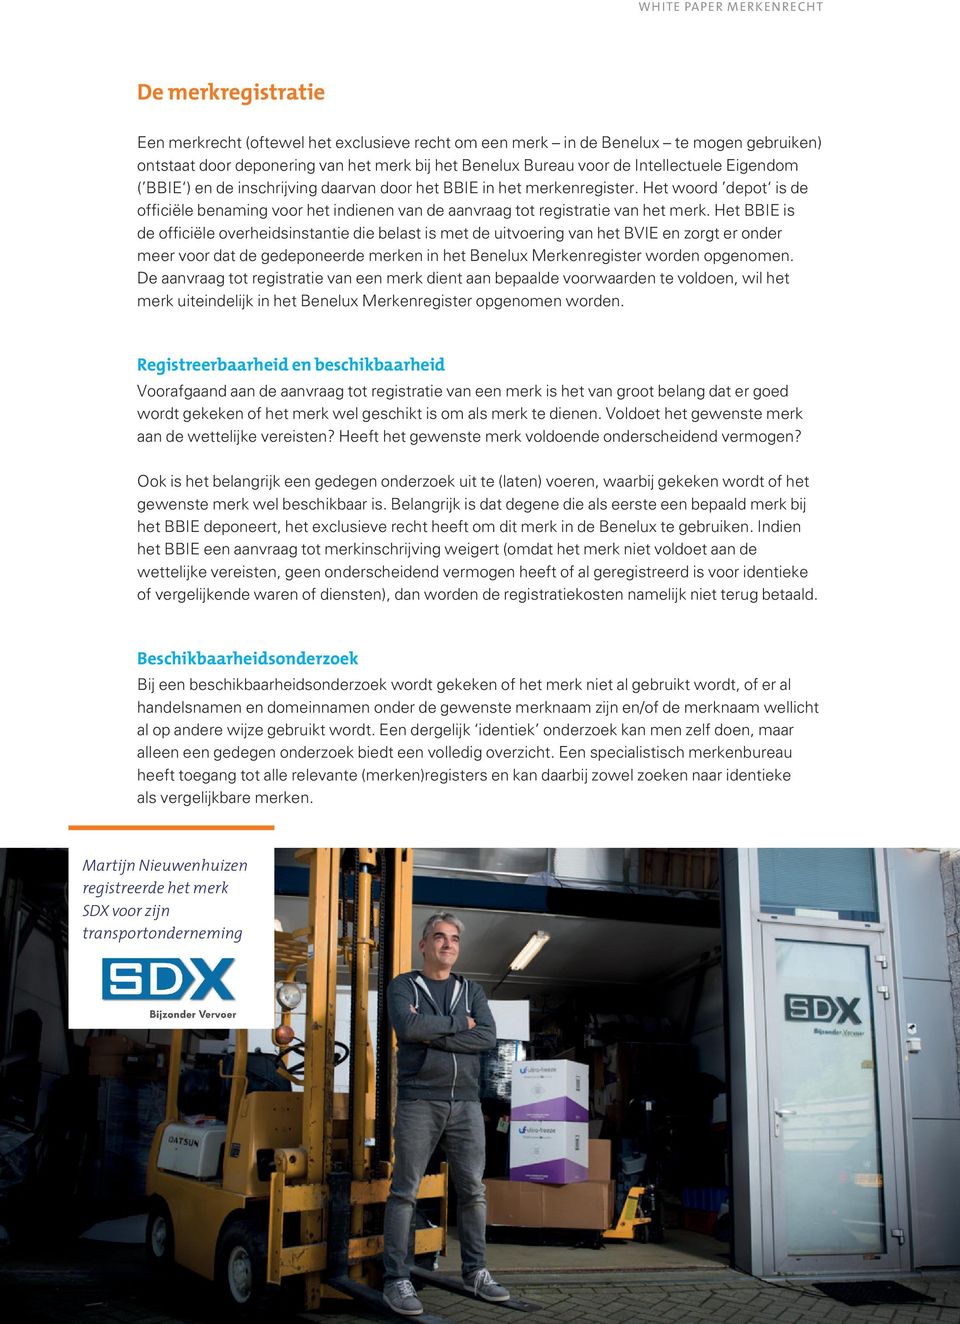 Het BBIE is de officiële overheidsinstantie die belast is met de uitvoering van het BVIE en zorgt er onder meer voor dat de gedeponeerde merken in het Benelux Merkenregister worden opgenomen.